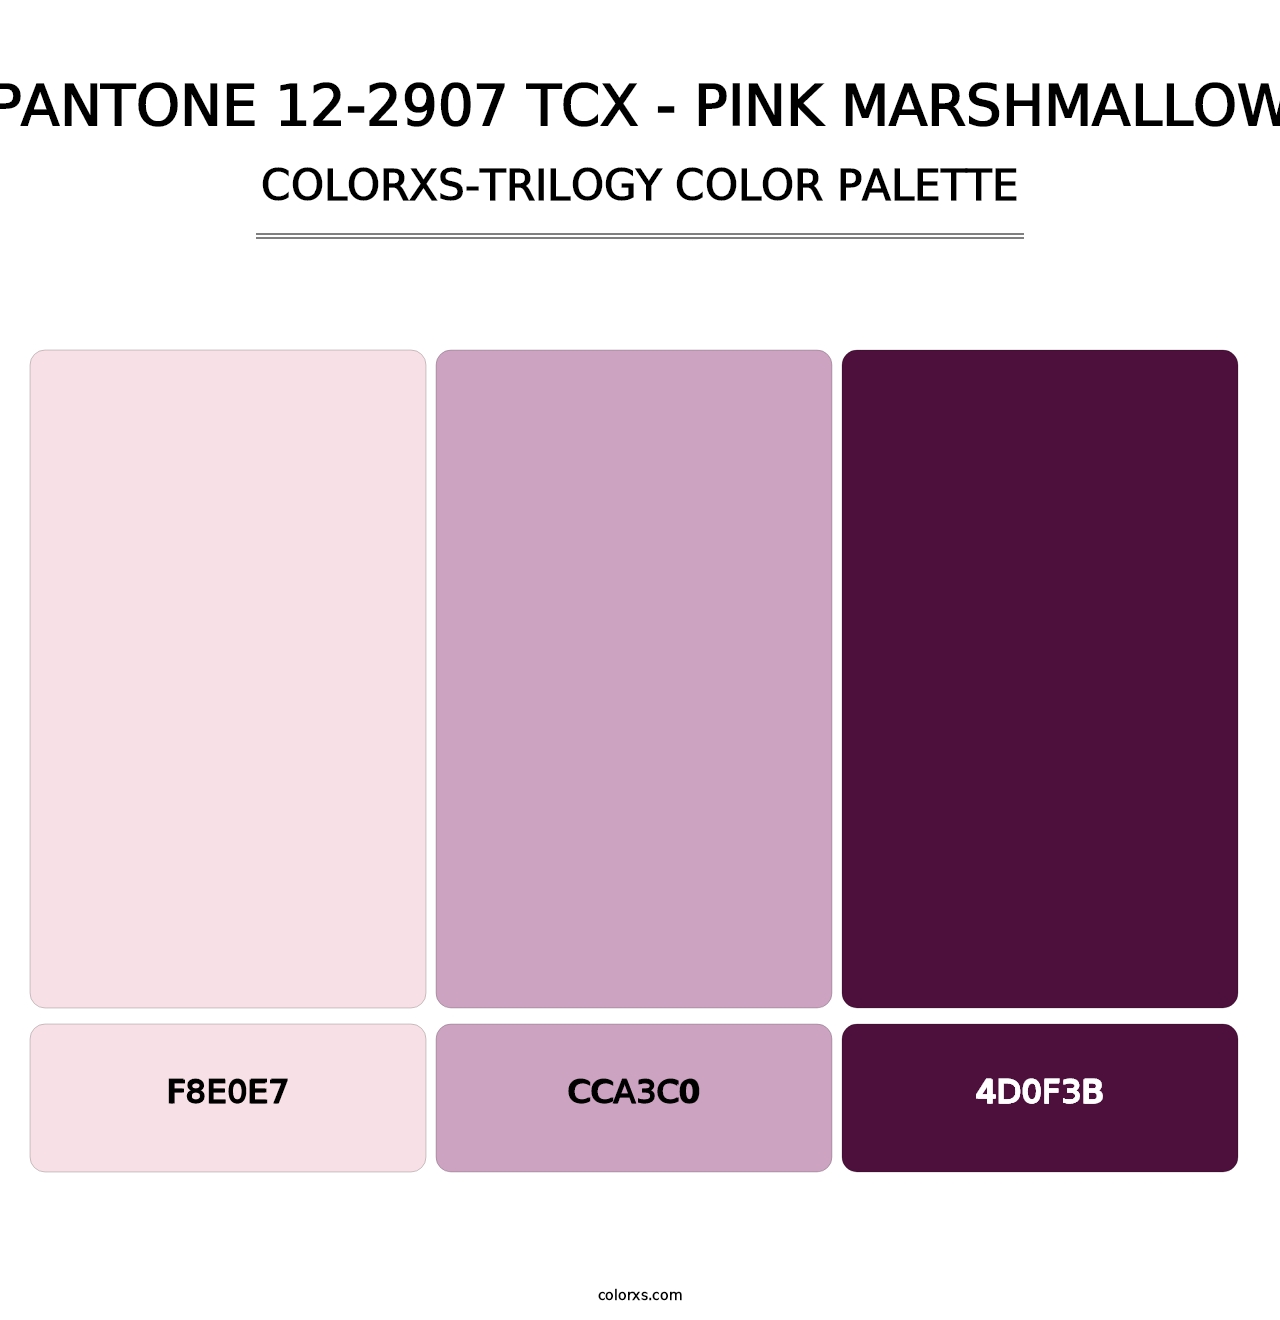 PANTONE 12-2907 TCX - Pink Marshmallow - Colorxs Trilogy Palette